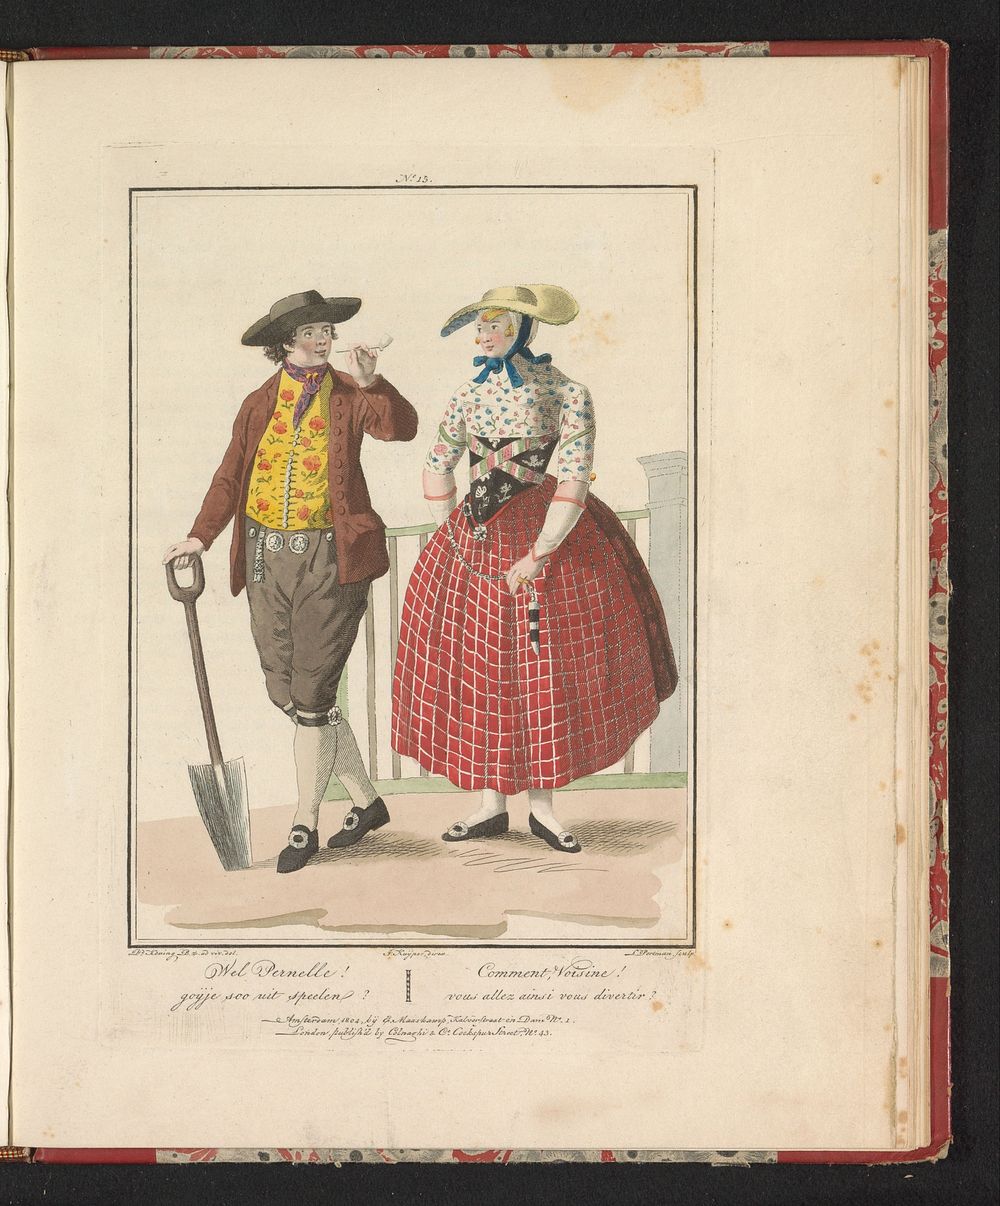 Man en vrouw van Zuid-Beveland (1804) by Ludwig Gottlieb Portman, D Bz de Koning, Jan Willem Pieneman, Jacques Kuyper, Evert…